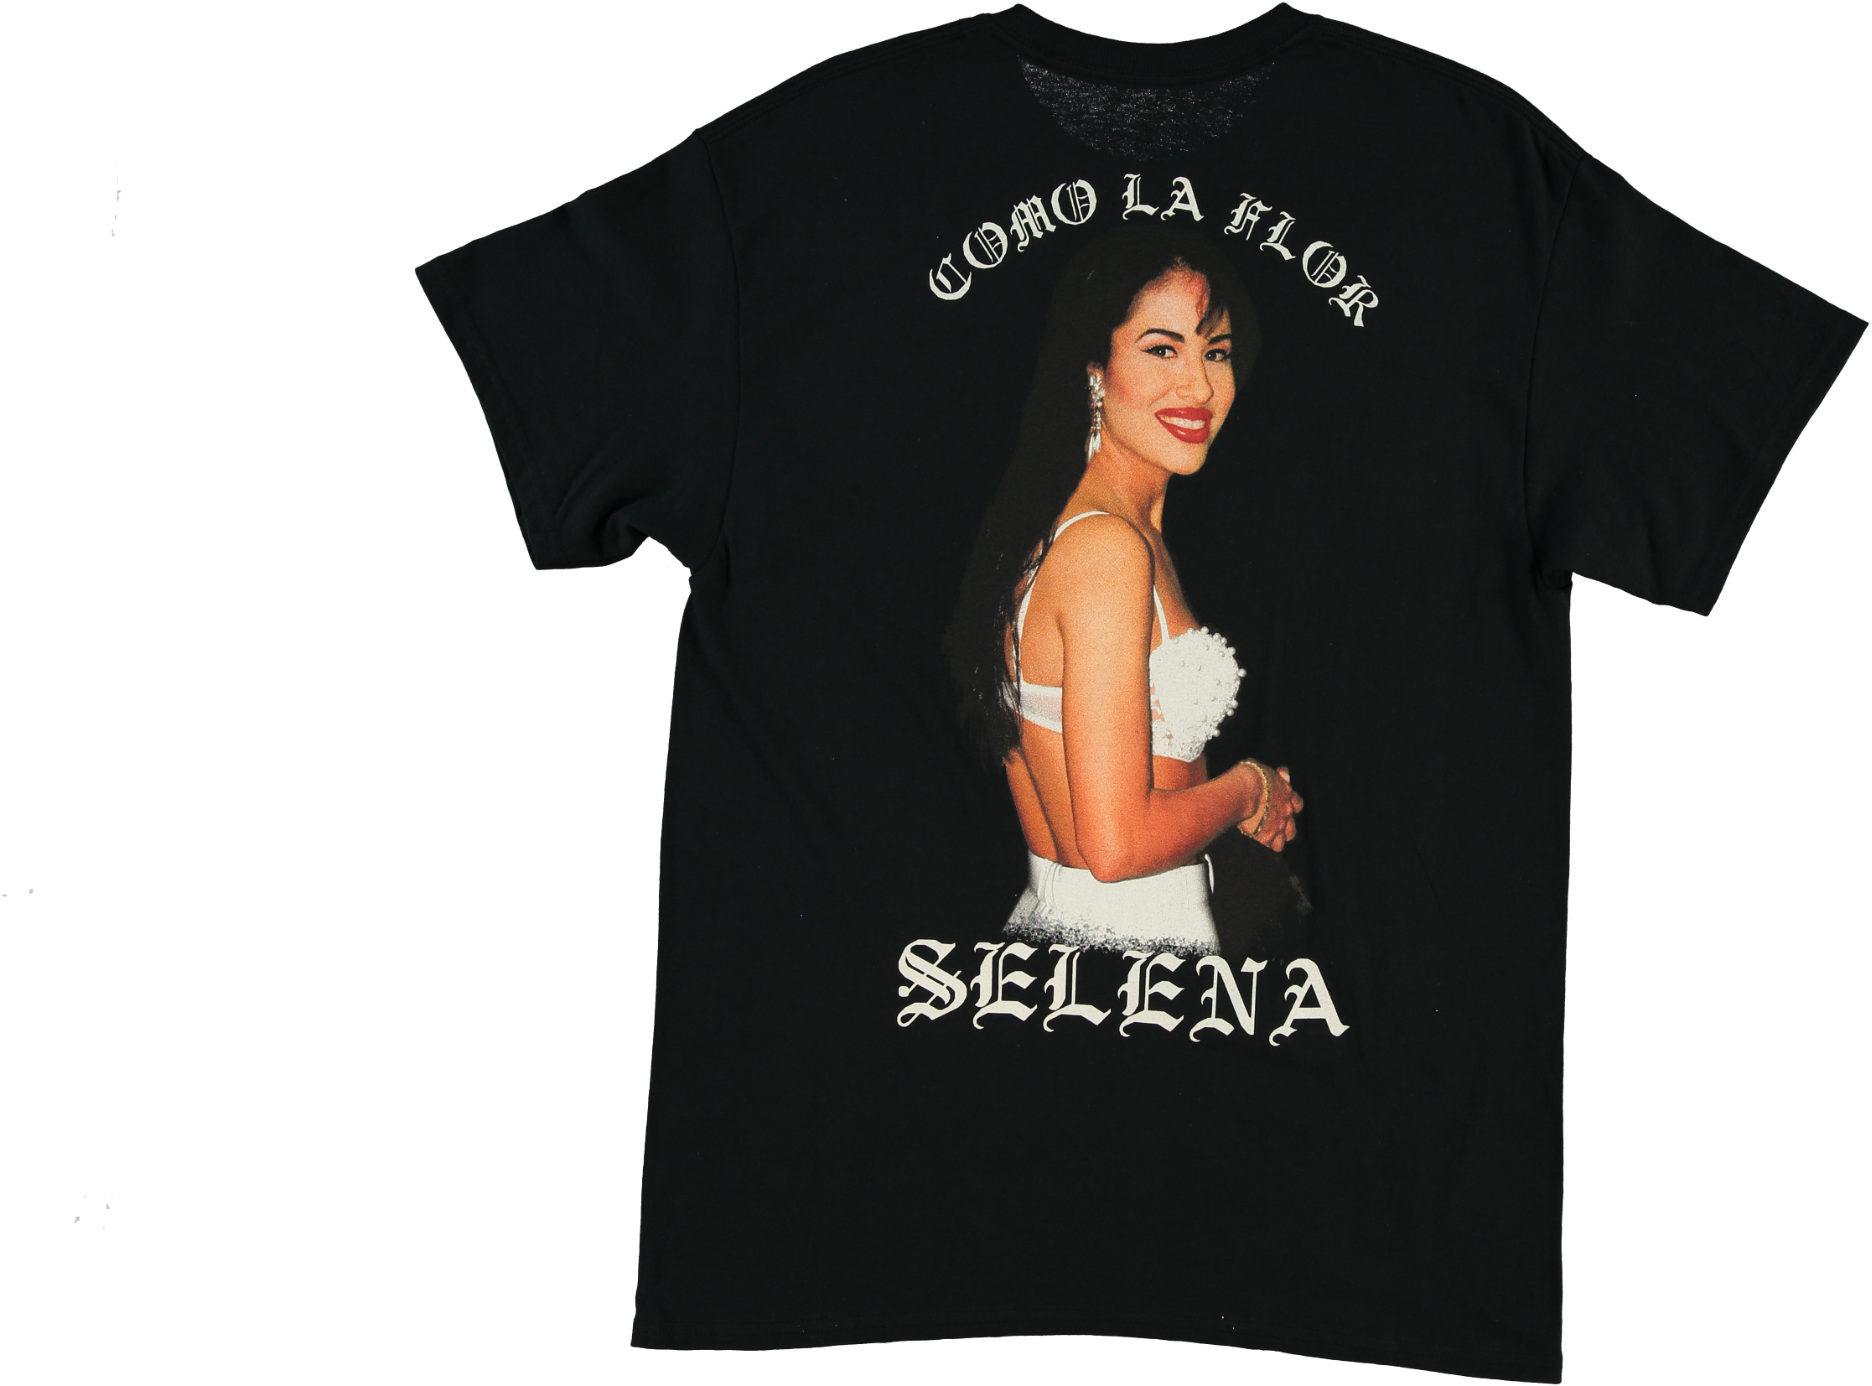 Selena t-shirt at Forever21